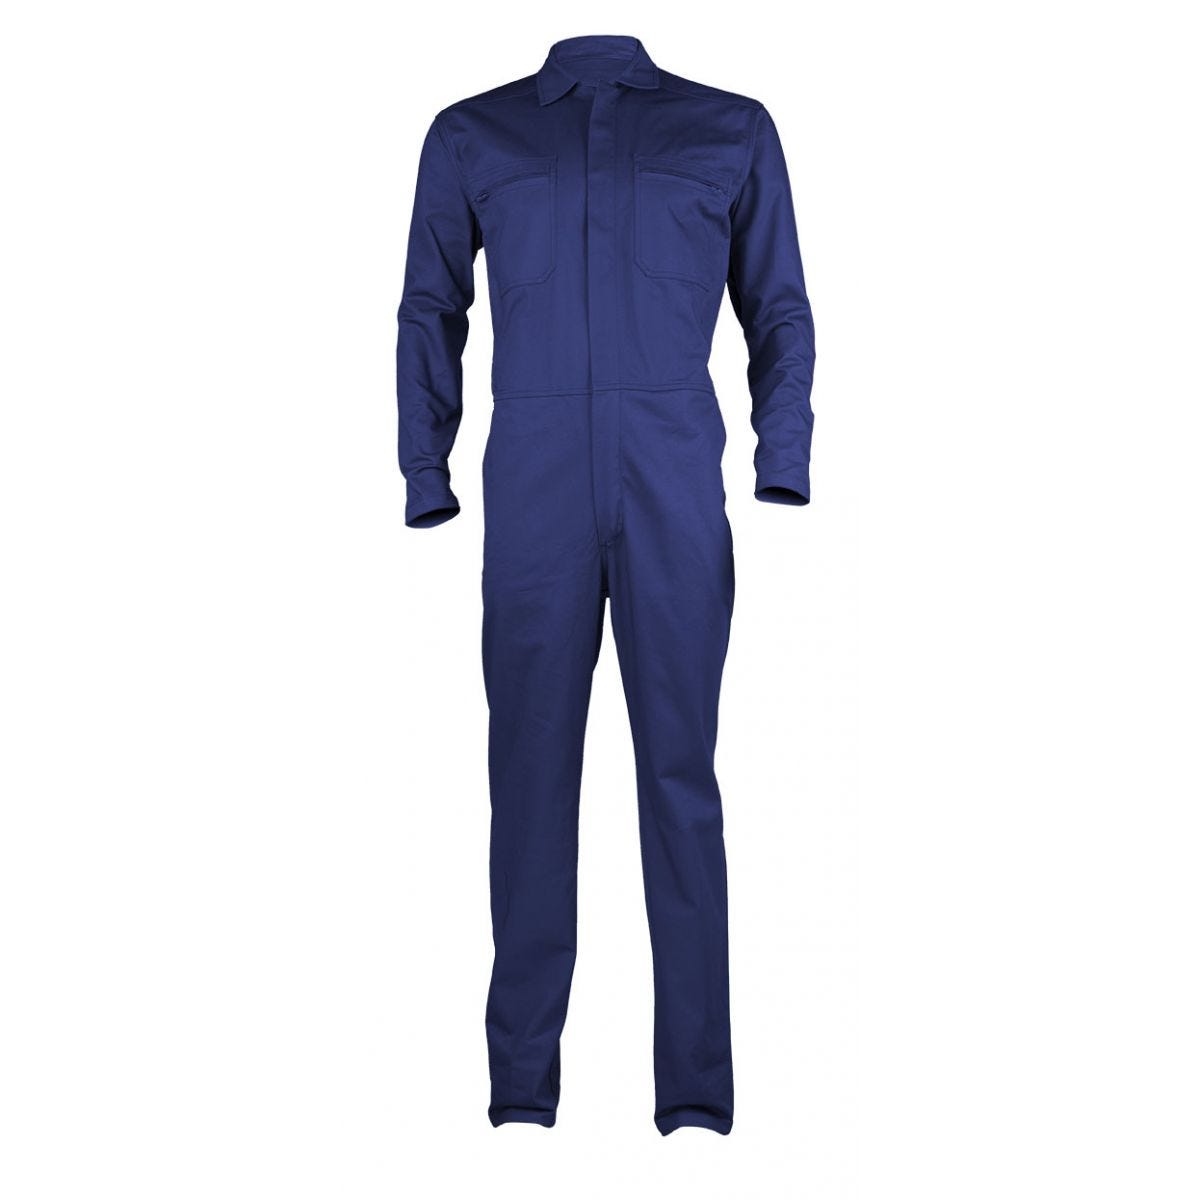 PARTNER Combinaison bleu royal, 100% coton, 280g/m² - COVERGUARD - Taille 3XL 0